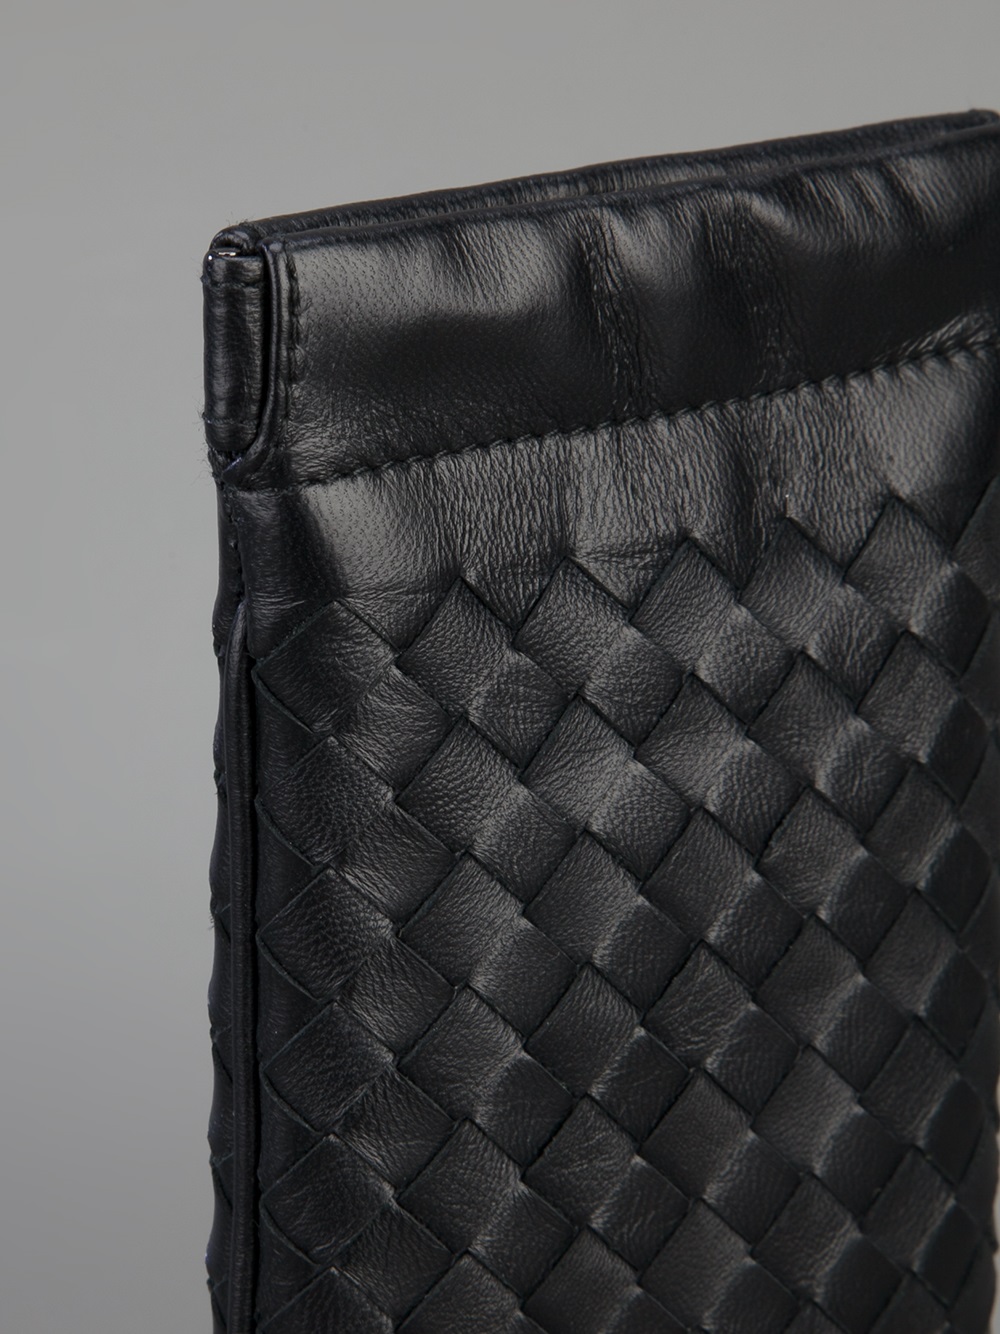 Bottega Veneta Woven Leather Glasses Case in Black | Lyst